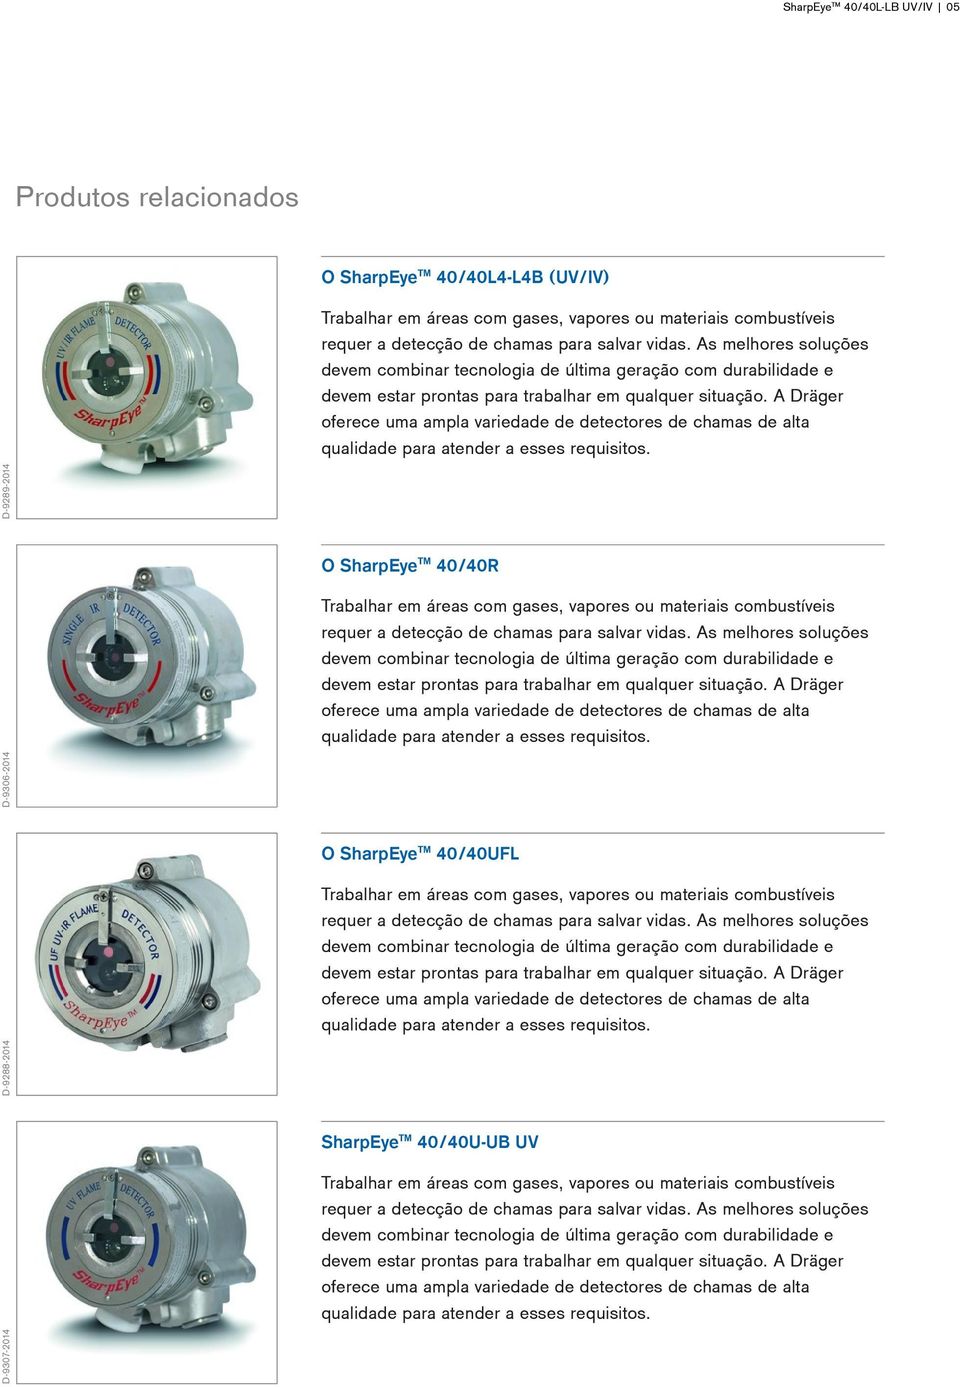 A Dräger oferece uma ampla variedade de detectores de chamas de alta qualidade para atender a esses requisitos.